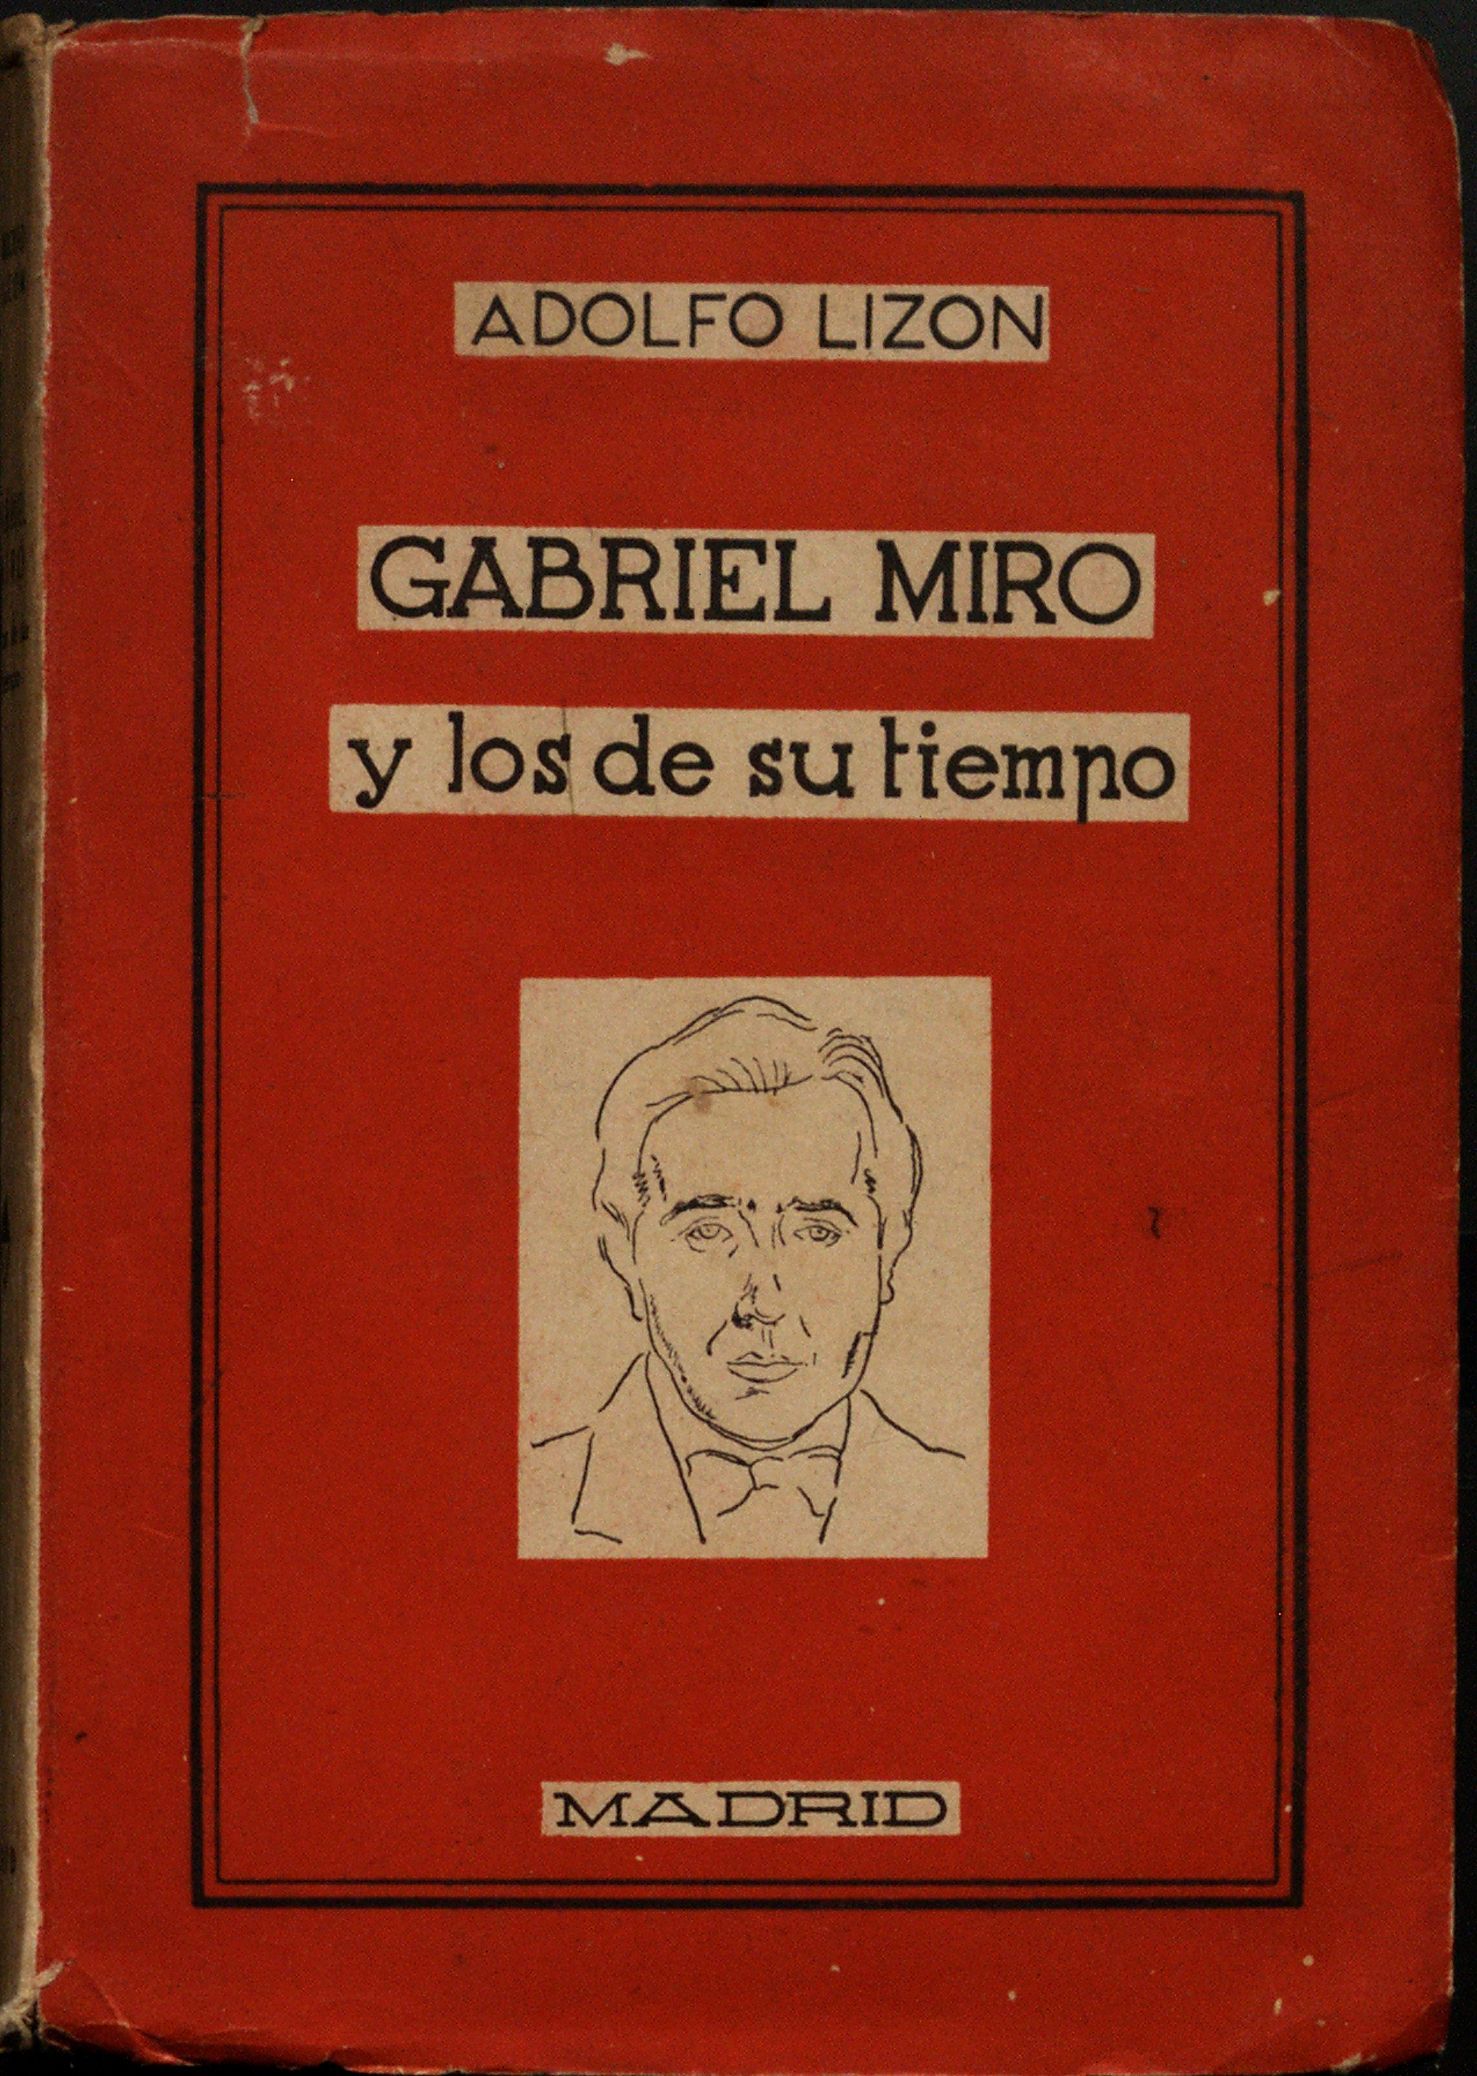 Antigua edición de "Gabriel Miró y los de su tiempo".